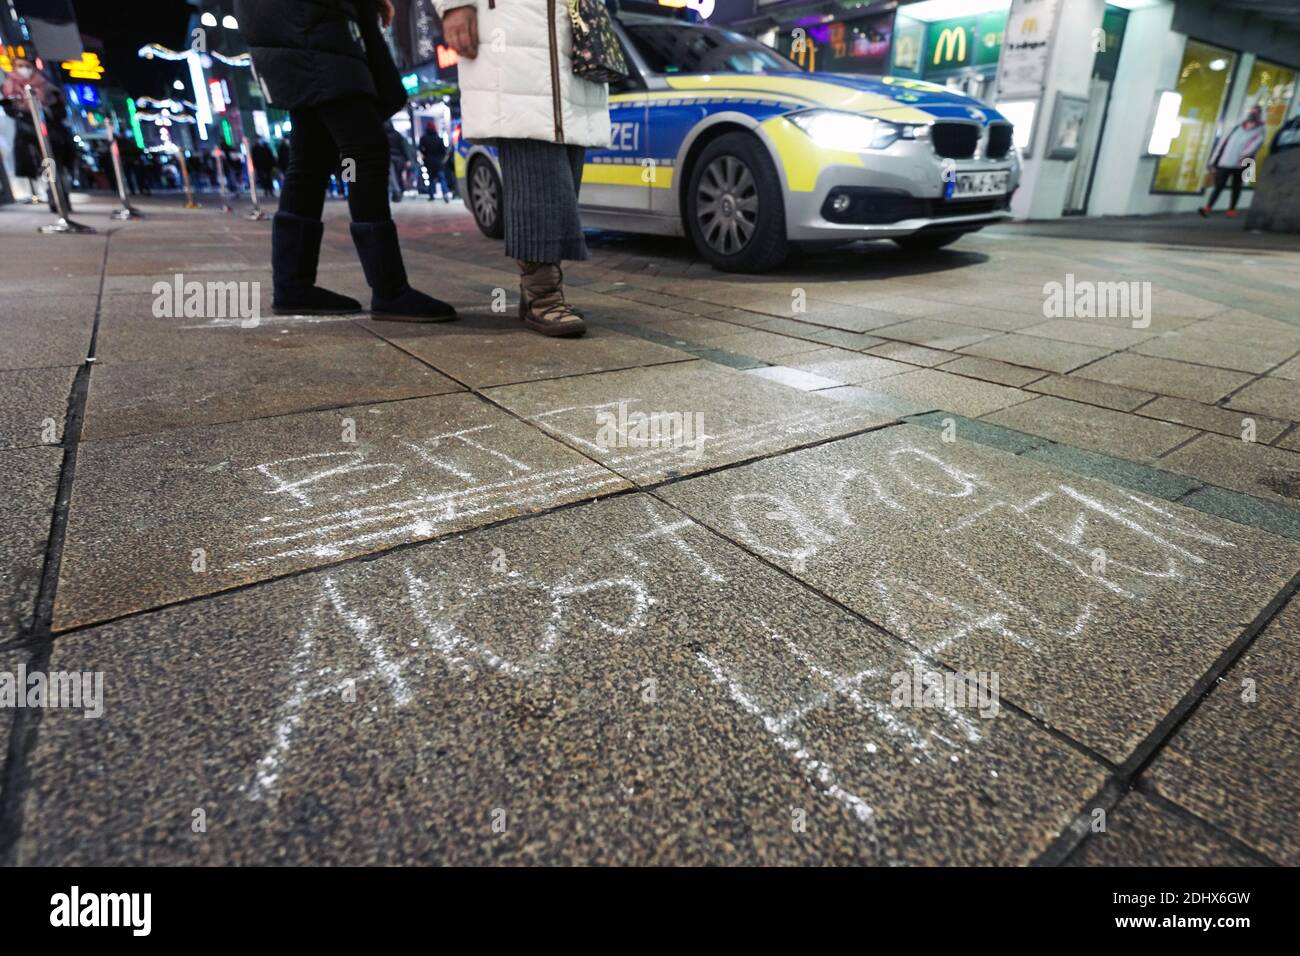 Aufforderung: 'Bitte Abstand halten' auf dem Boden in der Fußgängerzone Westenhellweg in Dortmund. Die Polizei kontrolliert die Hygieneregeln. Dortmund, 11.12.2020 Stock Photo